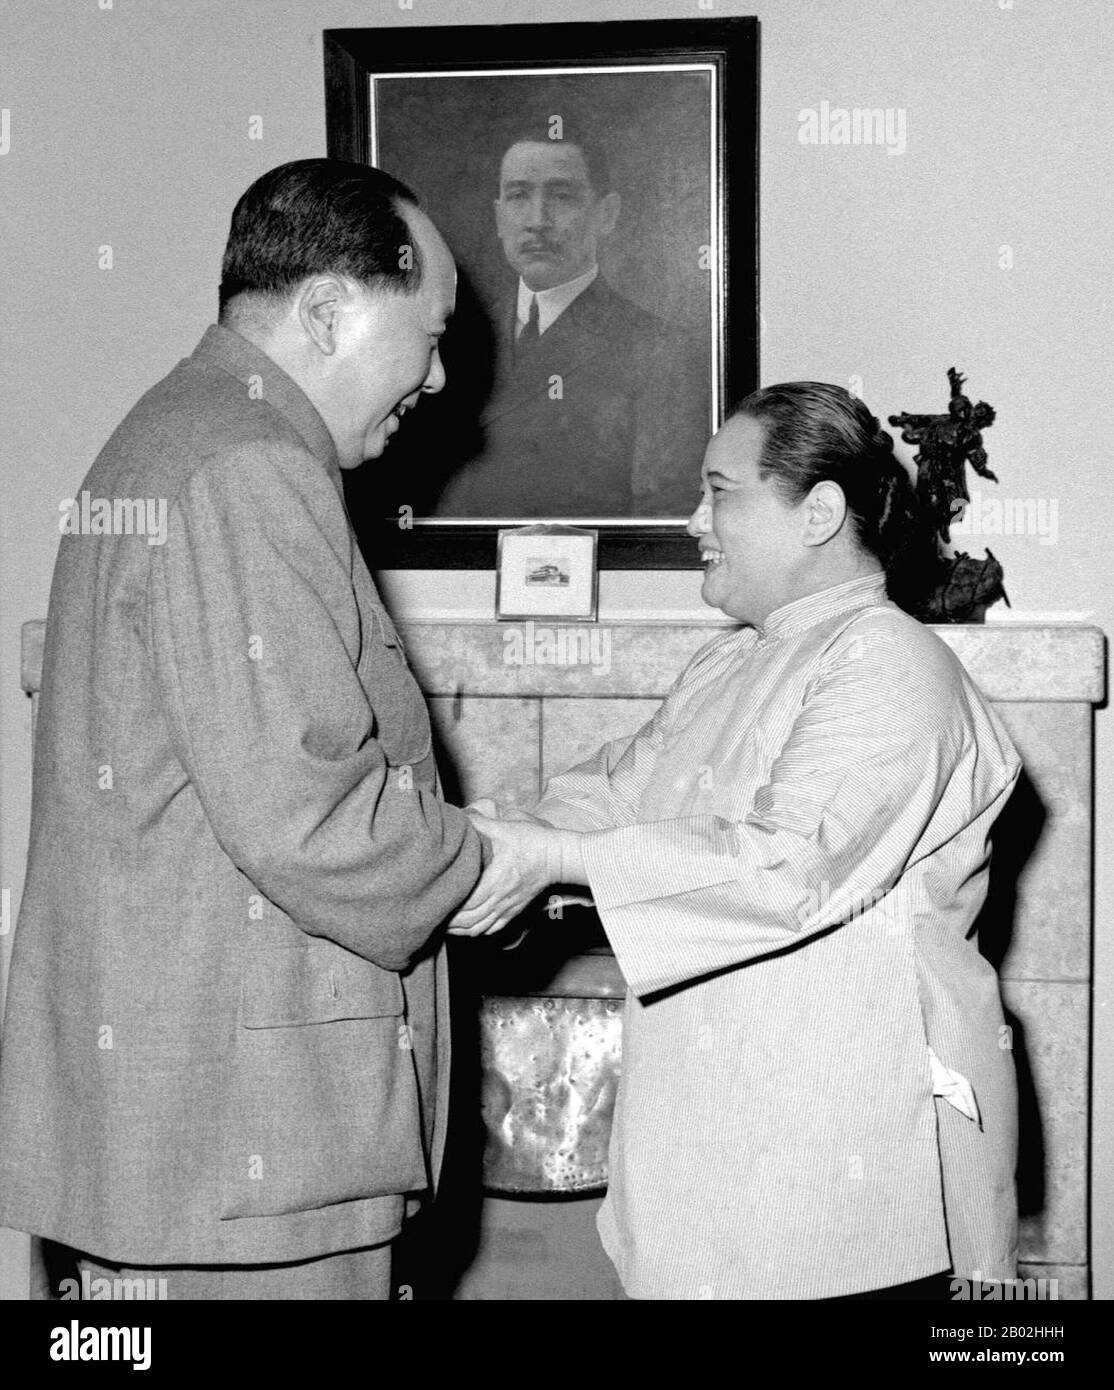 Soong Ch'ing-ling, Shanghai, 1920 (pinyin: Song Qingling, 27. Januar 1893 - 29. Mai 1981), auch bekannt als Madame Sun Yat-sen, war eine der drei Soong-Schwestern, die zusammen mit ihren Ehemännern zu den bedeutendsten politischen Persönlichkeiten Chinas des frühen 20. Jahrhunderts gehörten. Sie war stellvertretende Vorsitzende der Volksrepublik China. Sie war die erste nicht-königliche Frau, die offiziell Staatschefin von China wurde und von 1968 bis 1972 als Co-Vorsitzende der Republik wirkte. Sie wurde 1981, kurz vor ihrem Tod, als Staatspräsidentin Chinas erneut Staatschef. Soong wird manchmal als Asien betrachtet' Stockfoto